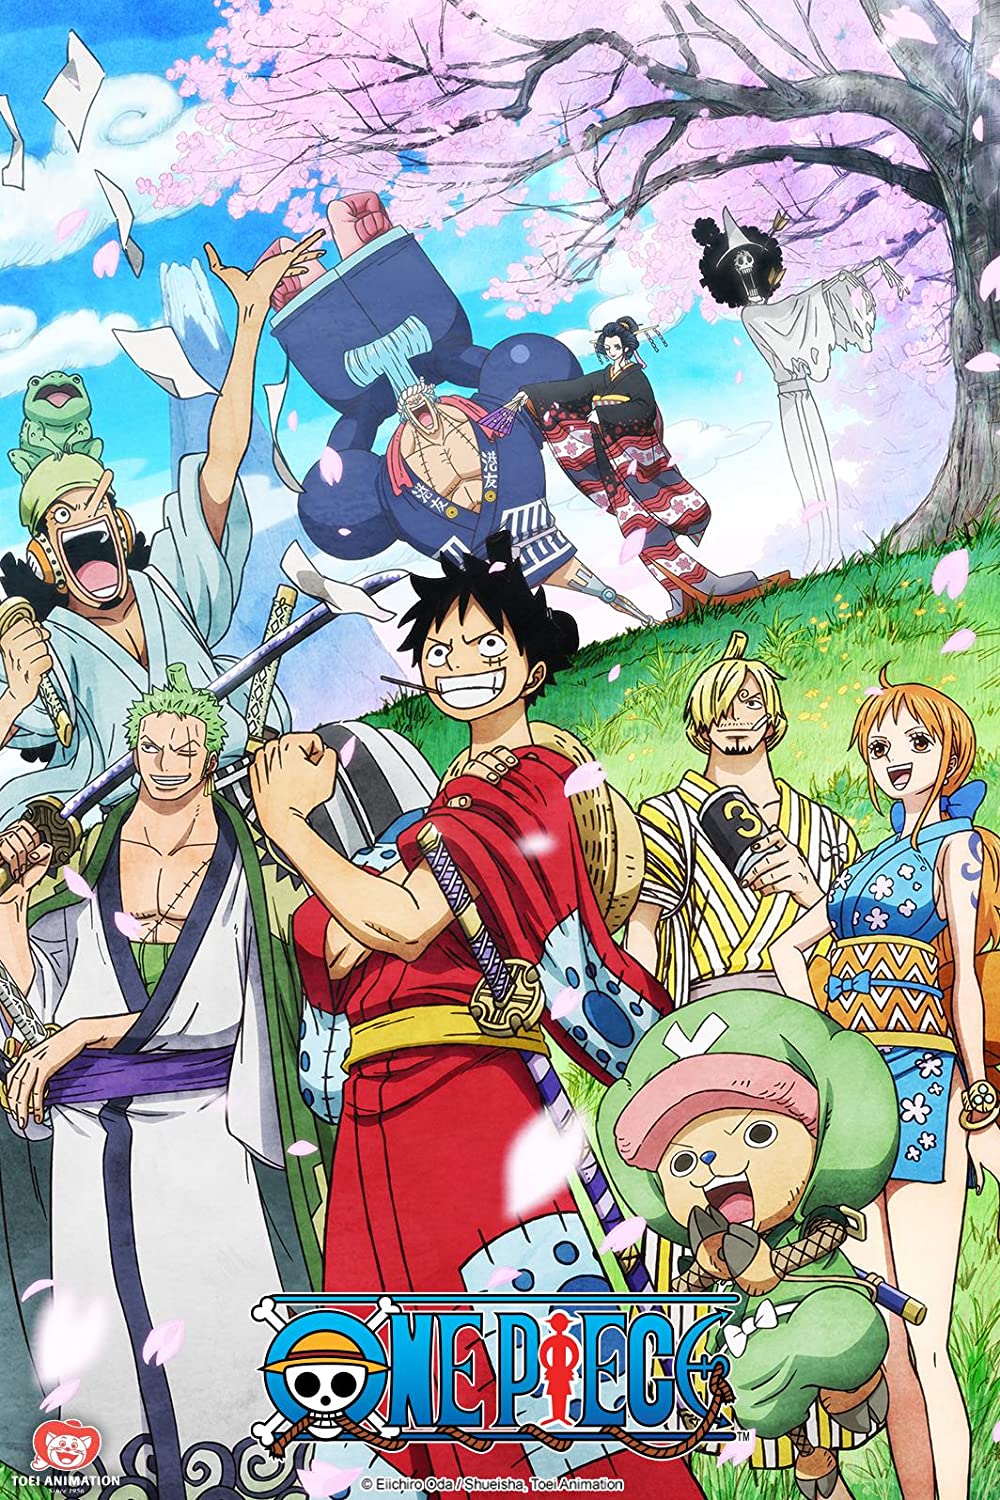 ดูหนังออนไลน์ฟรี One Piece Season 1 EP.46 วันพีช อิสท์บลู ซีซั่น 1 ตอนที่ 46